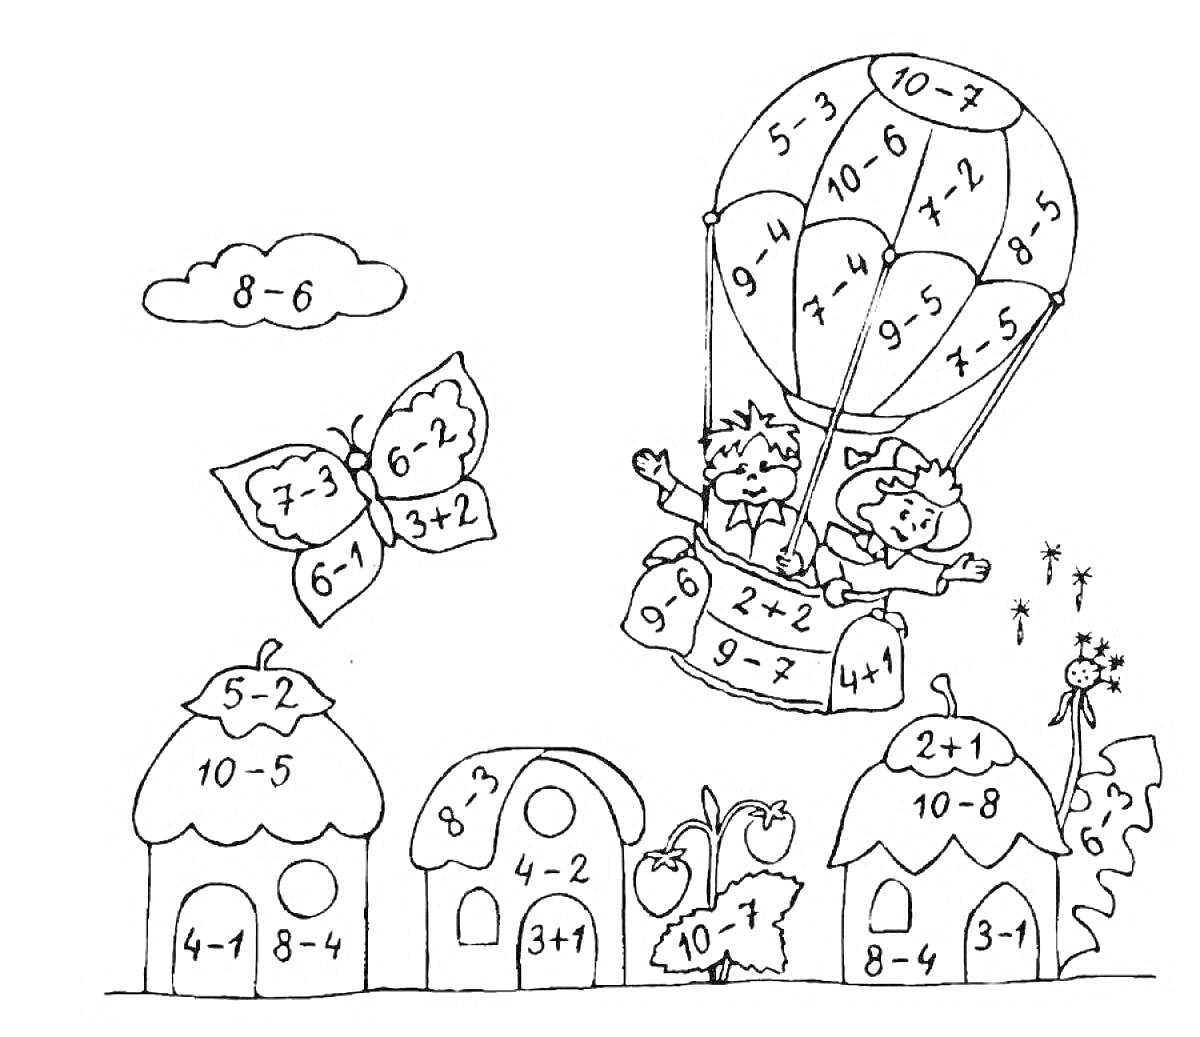 Два человека в воздушном шаре с математическими примерами, бабочки с математическими примерами, дома с математическими примерами, облако с математическим примером, фрукты с математическими примерами, цветы.